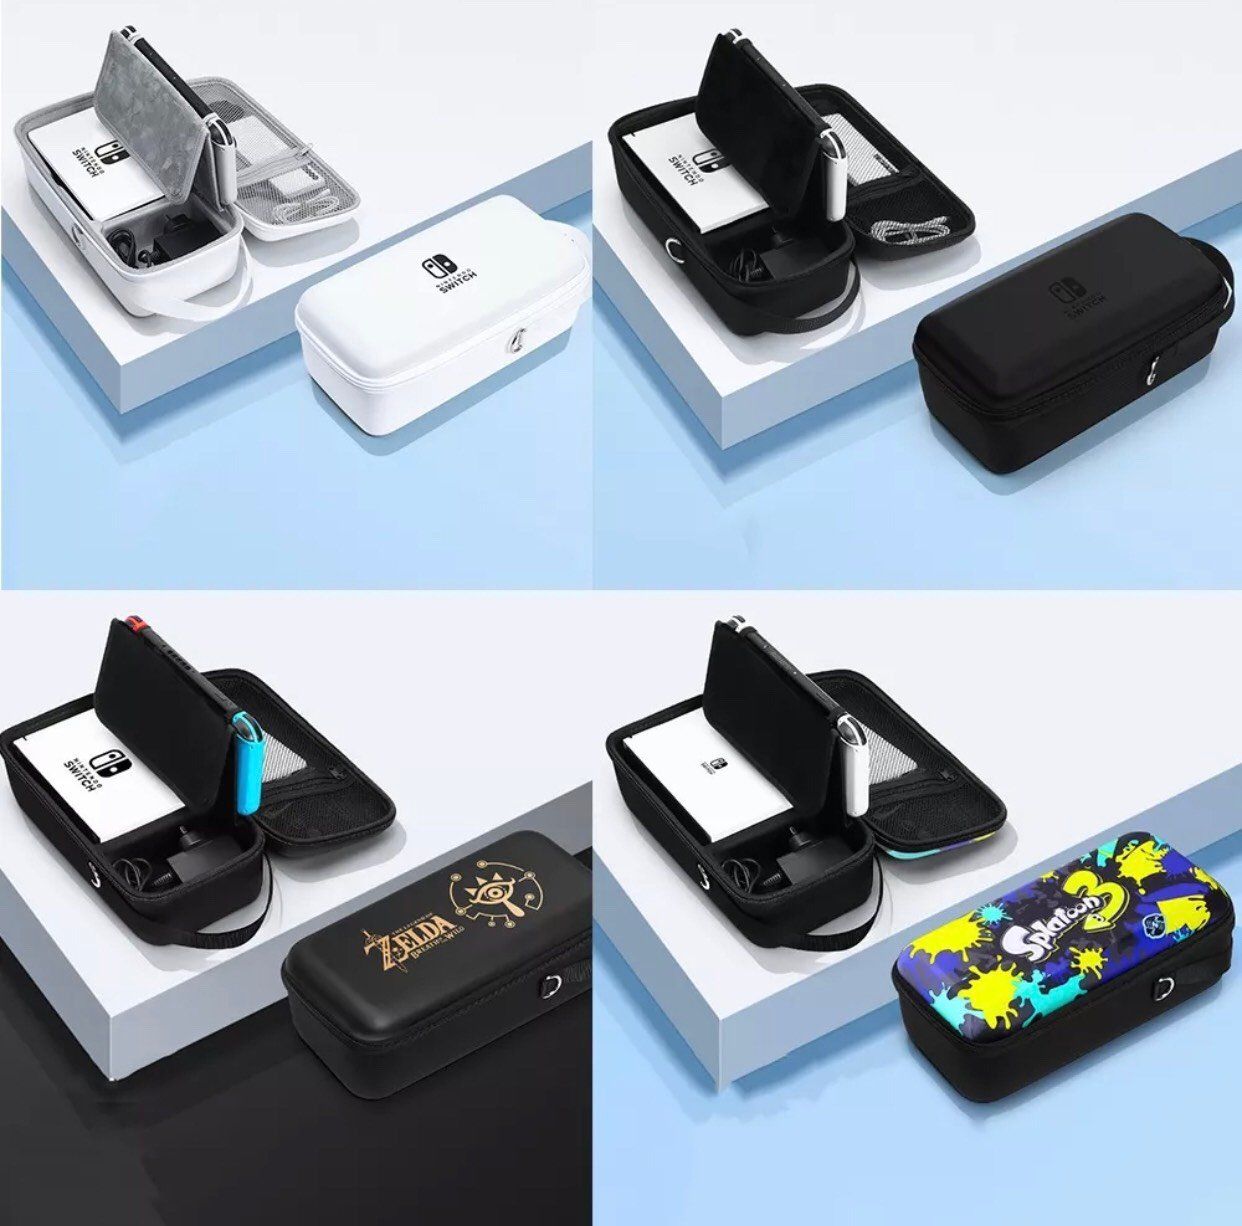 Túi Du Lịch Mini Nhỏ Gọn Đựng Máy Game, Dock, Sạc Dành Cho Nintendo Switch Oled/V1/V2